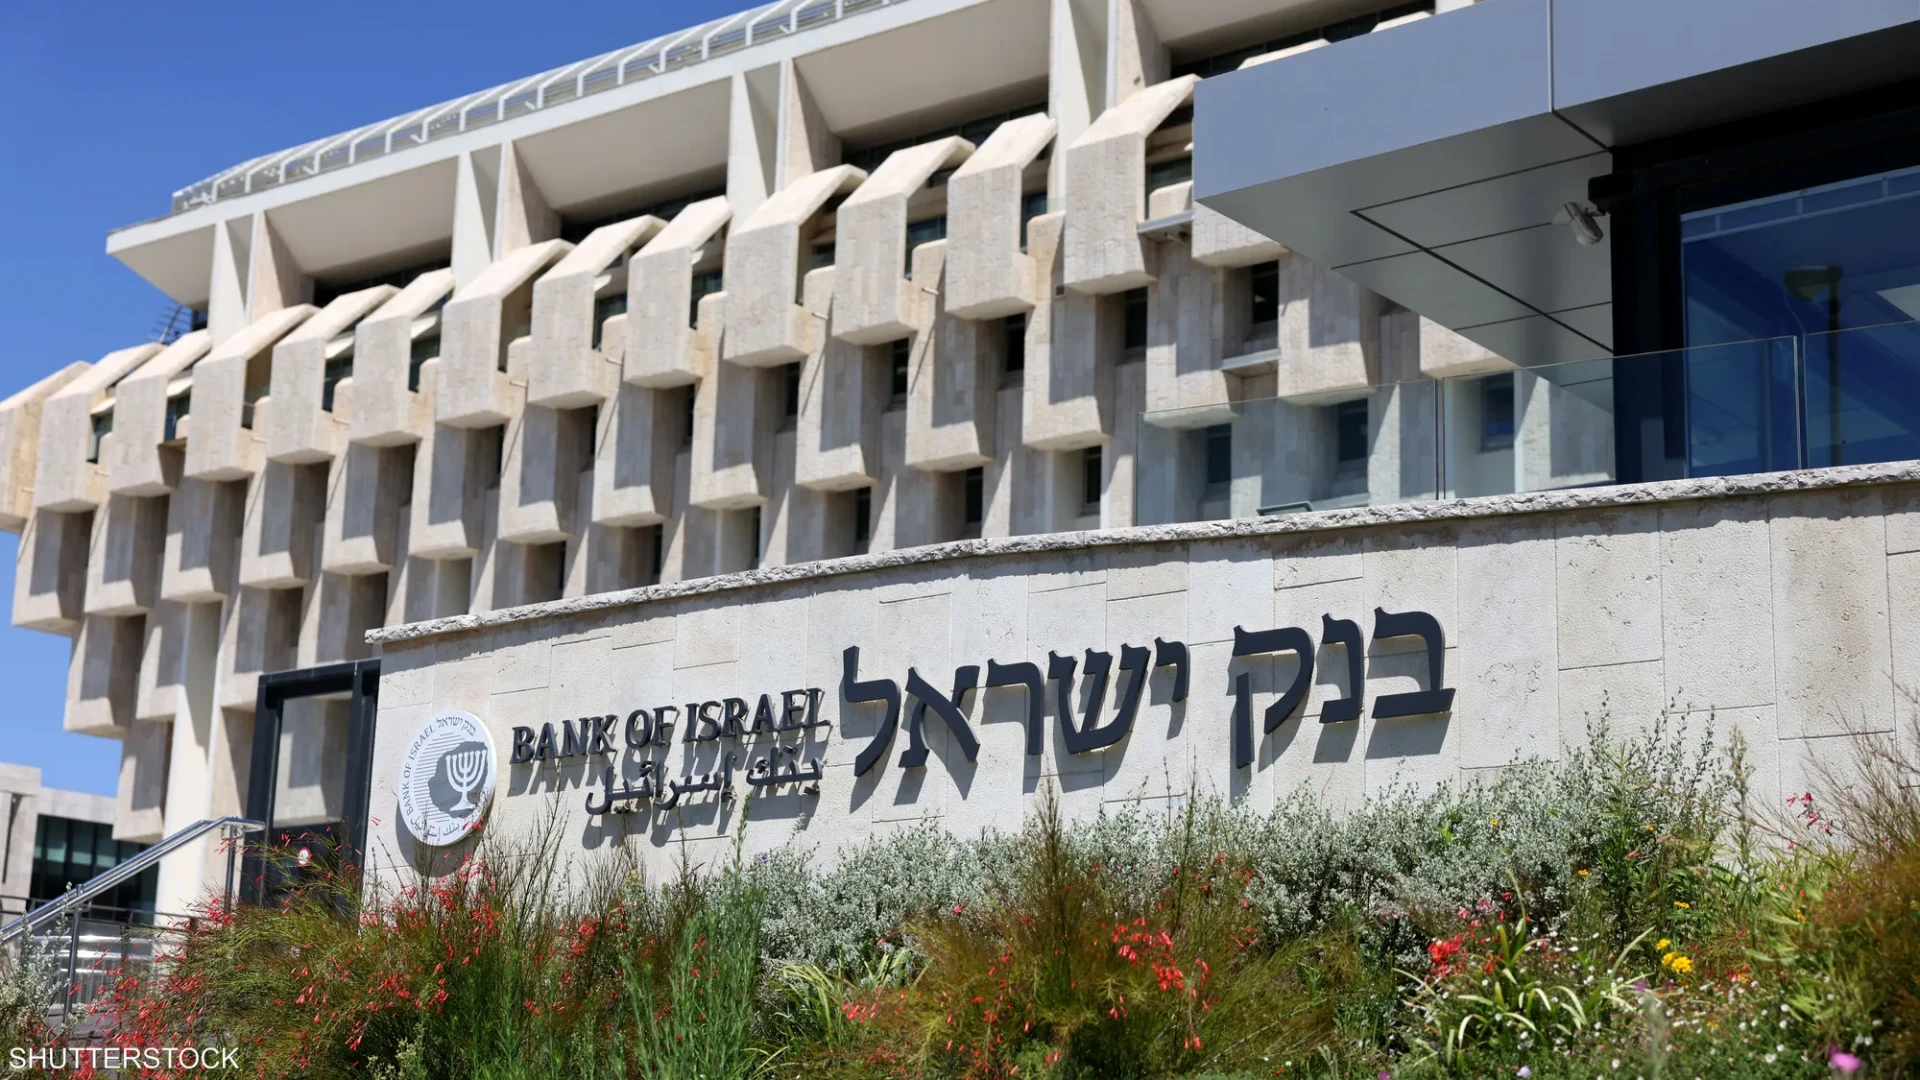 بنك اسرائيل المركزي: خسائر حرب غزة بلغت 58.3 مليار دولار